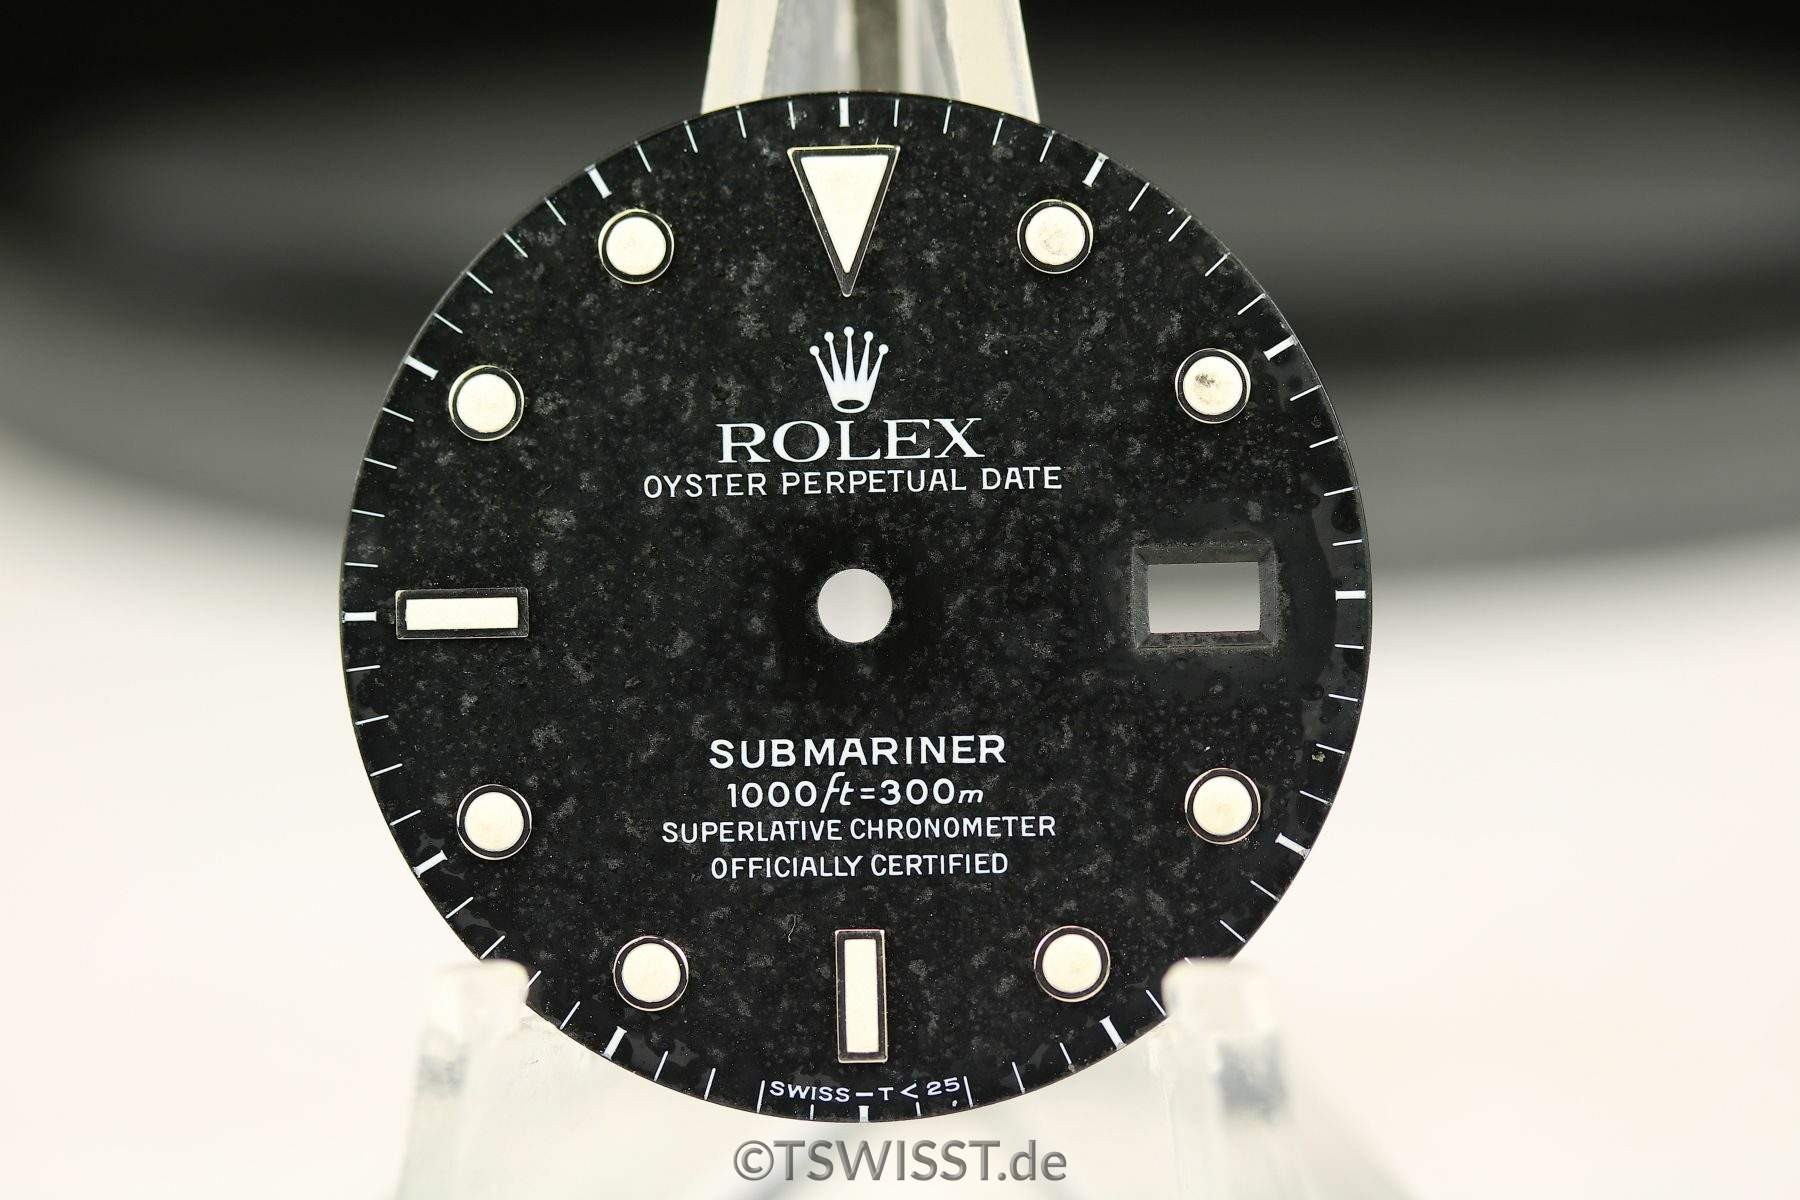 rolex Submariner 16610 dial